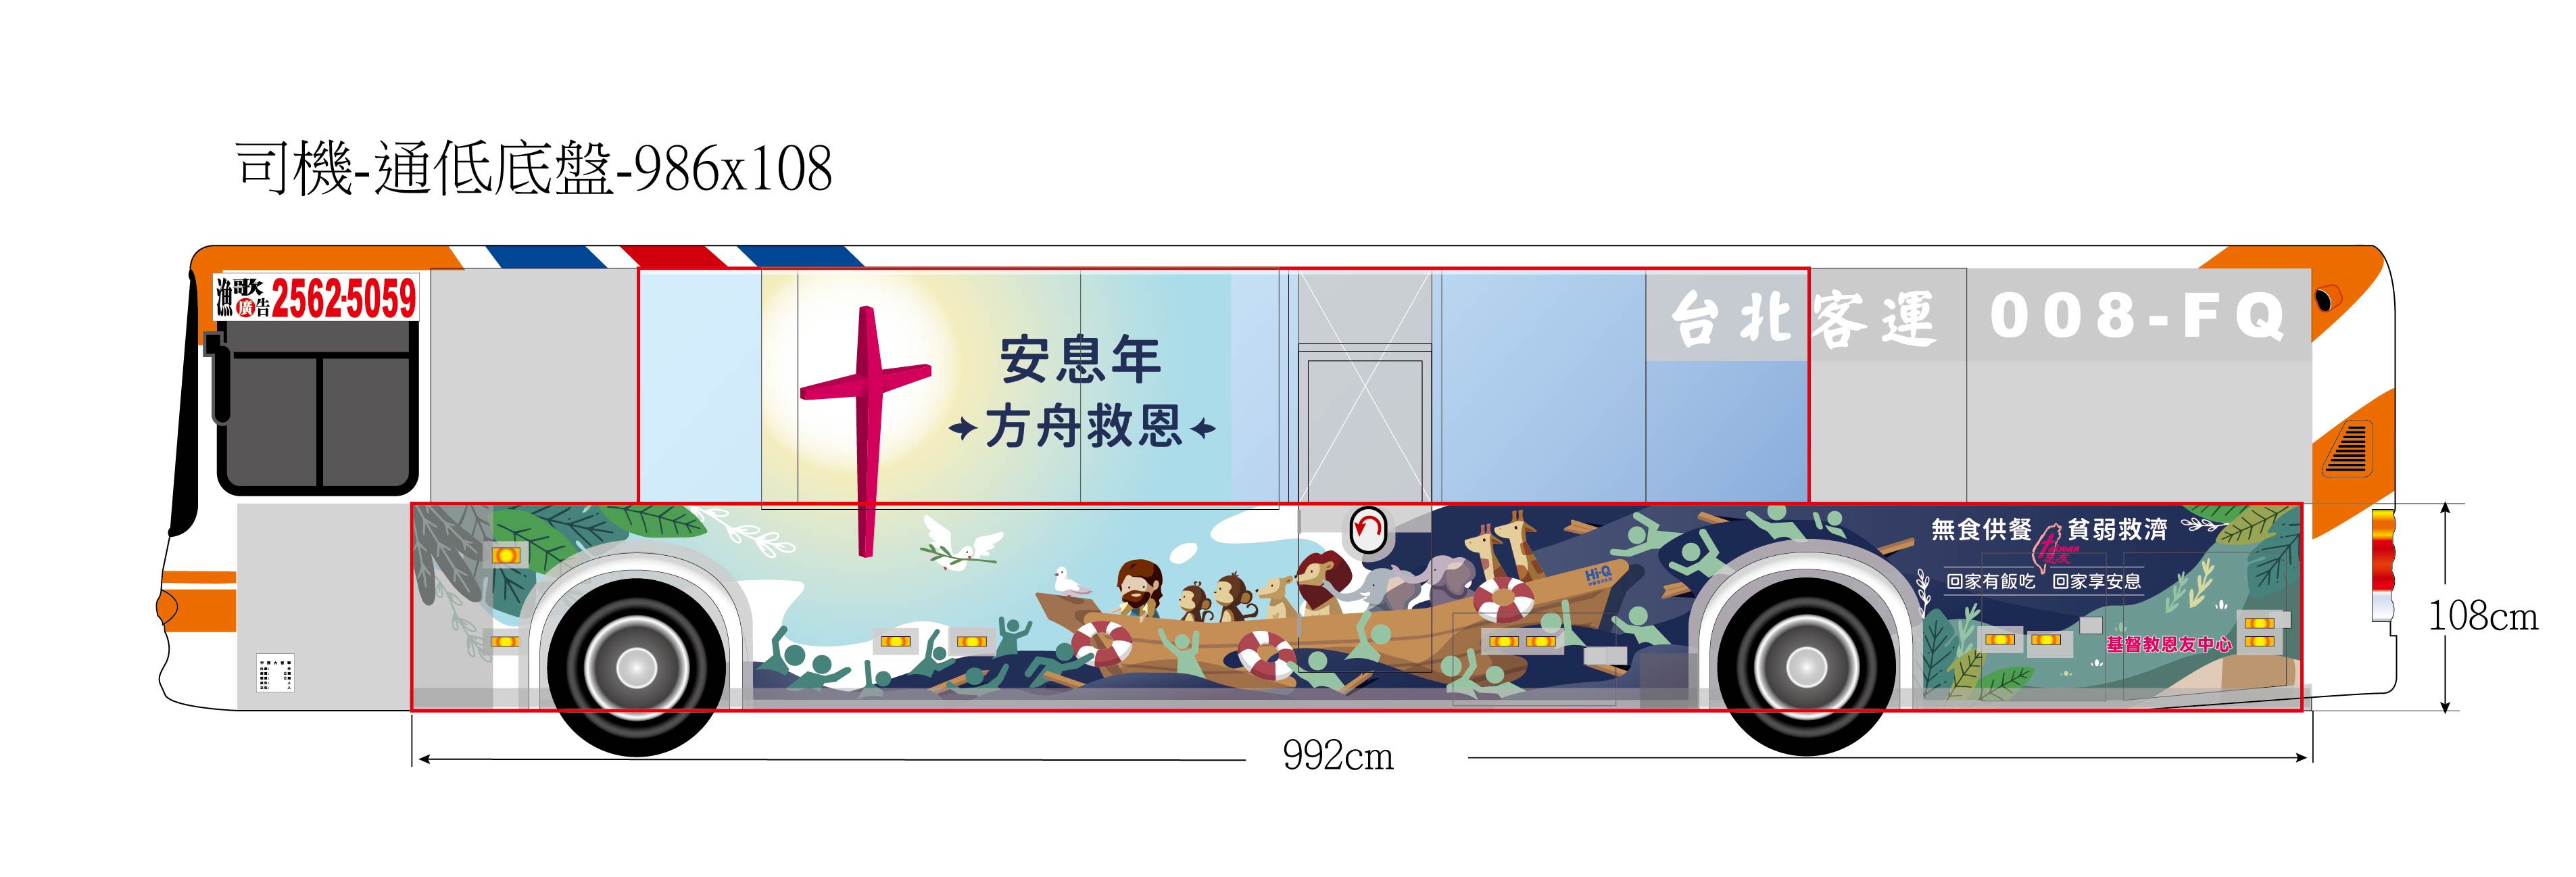 福音廣告公車設計(圖/恩友中心提供)